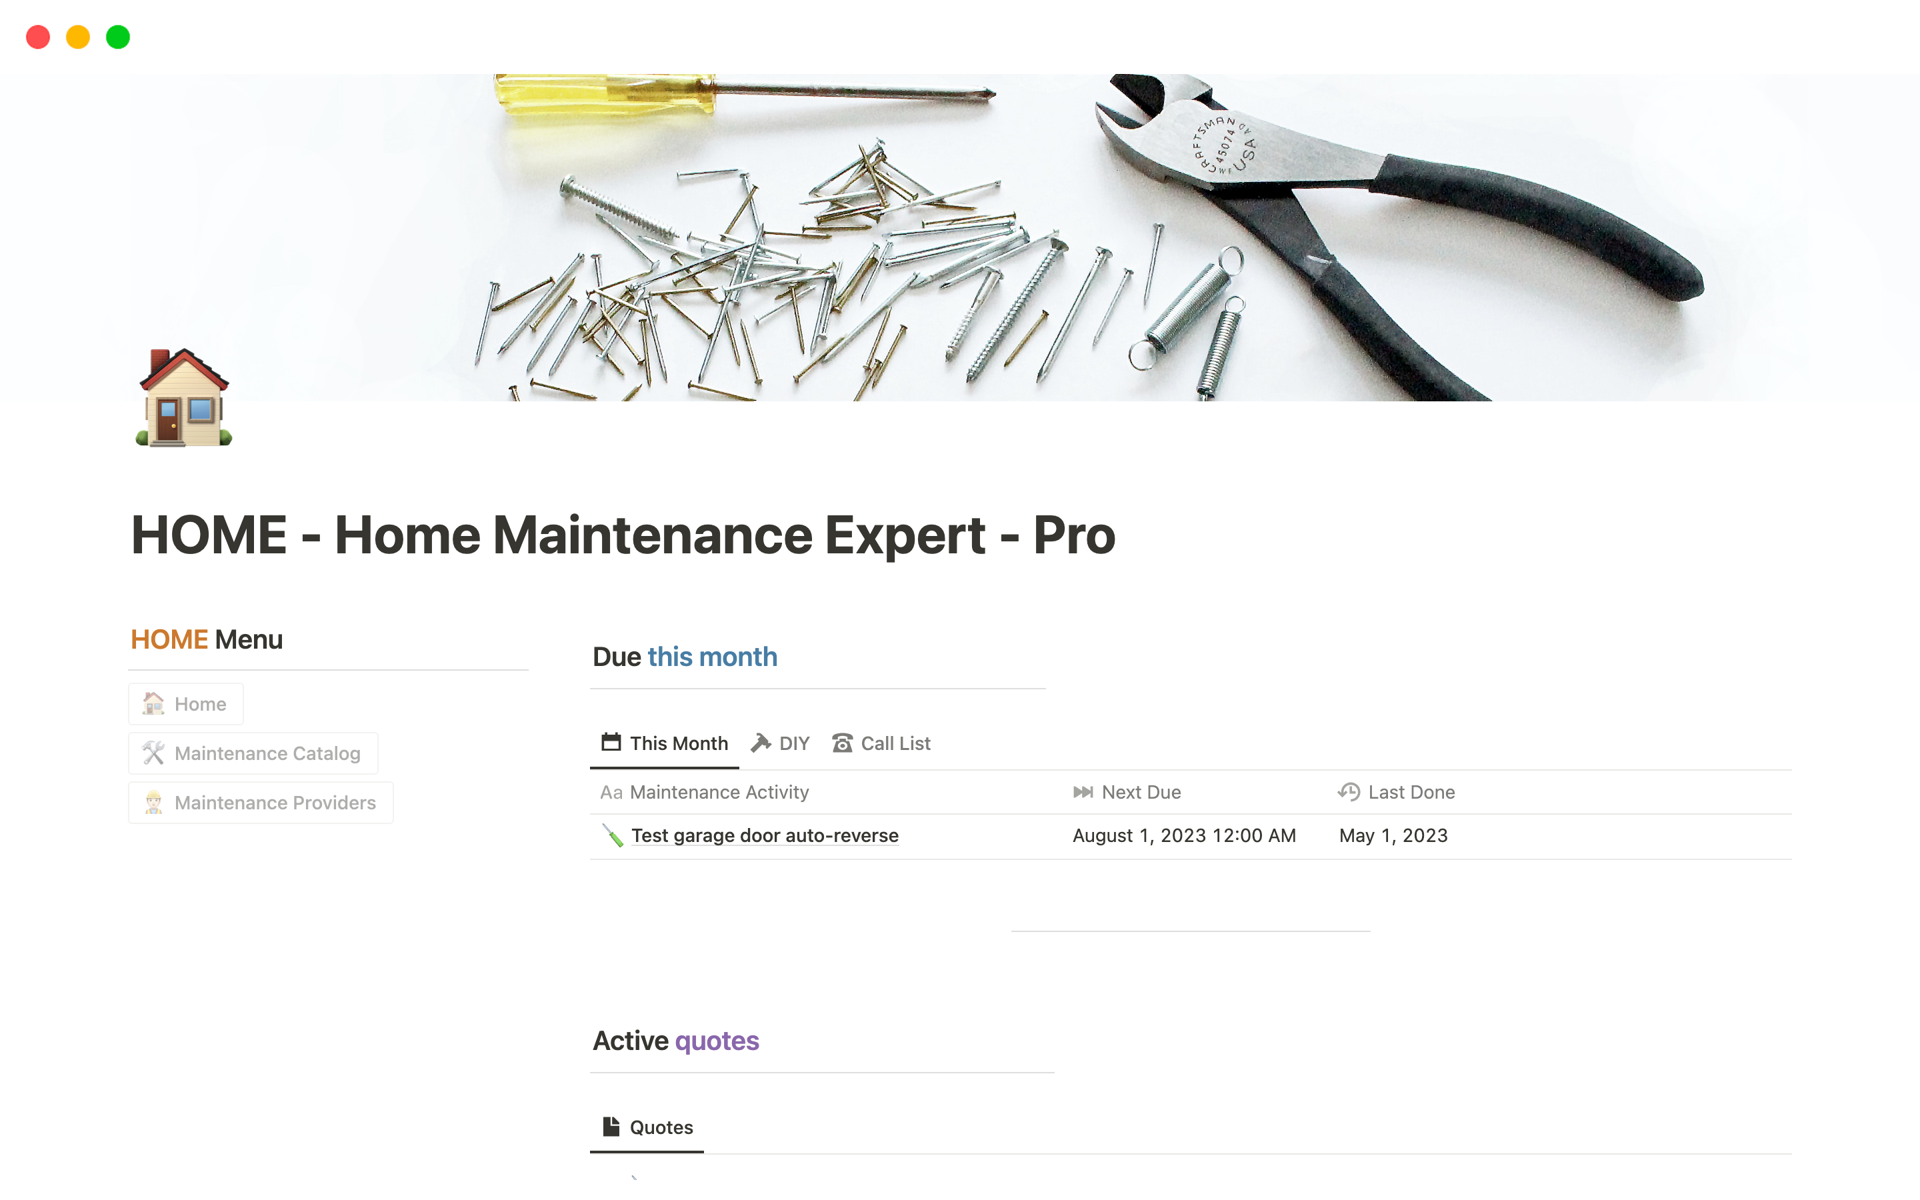 Vista previa de plantilla para HOME - Home Maintenance Expert - Pro